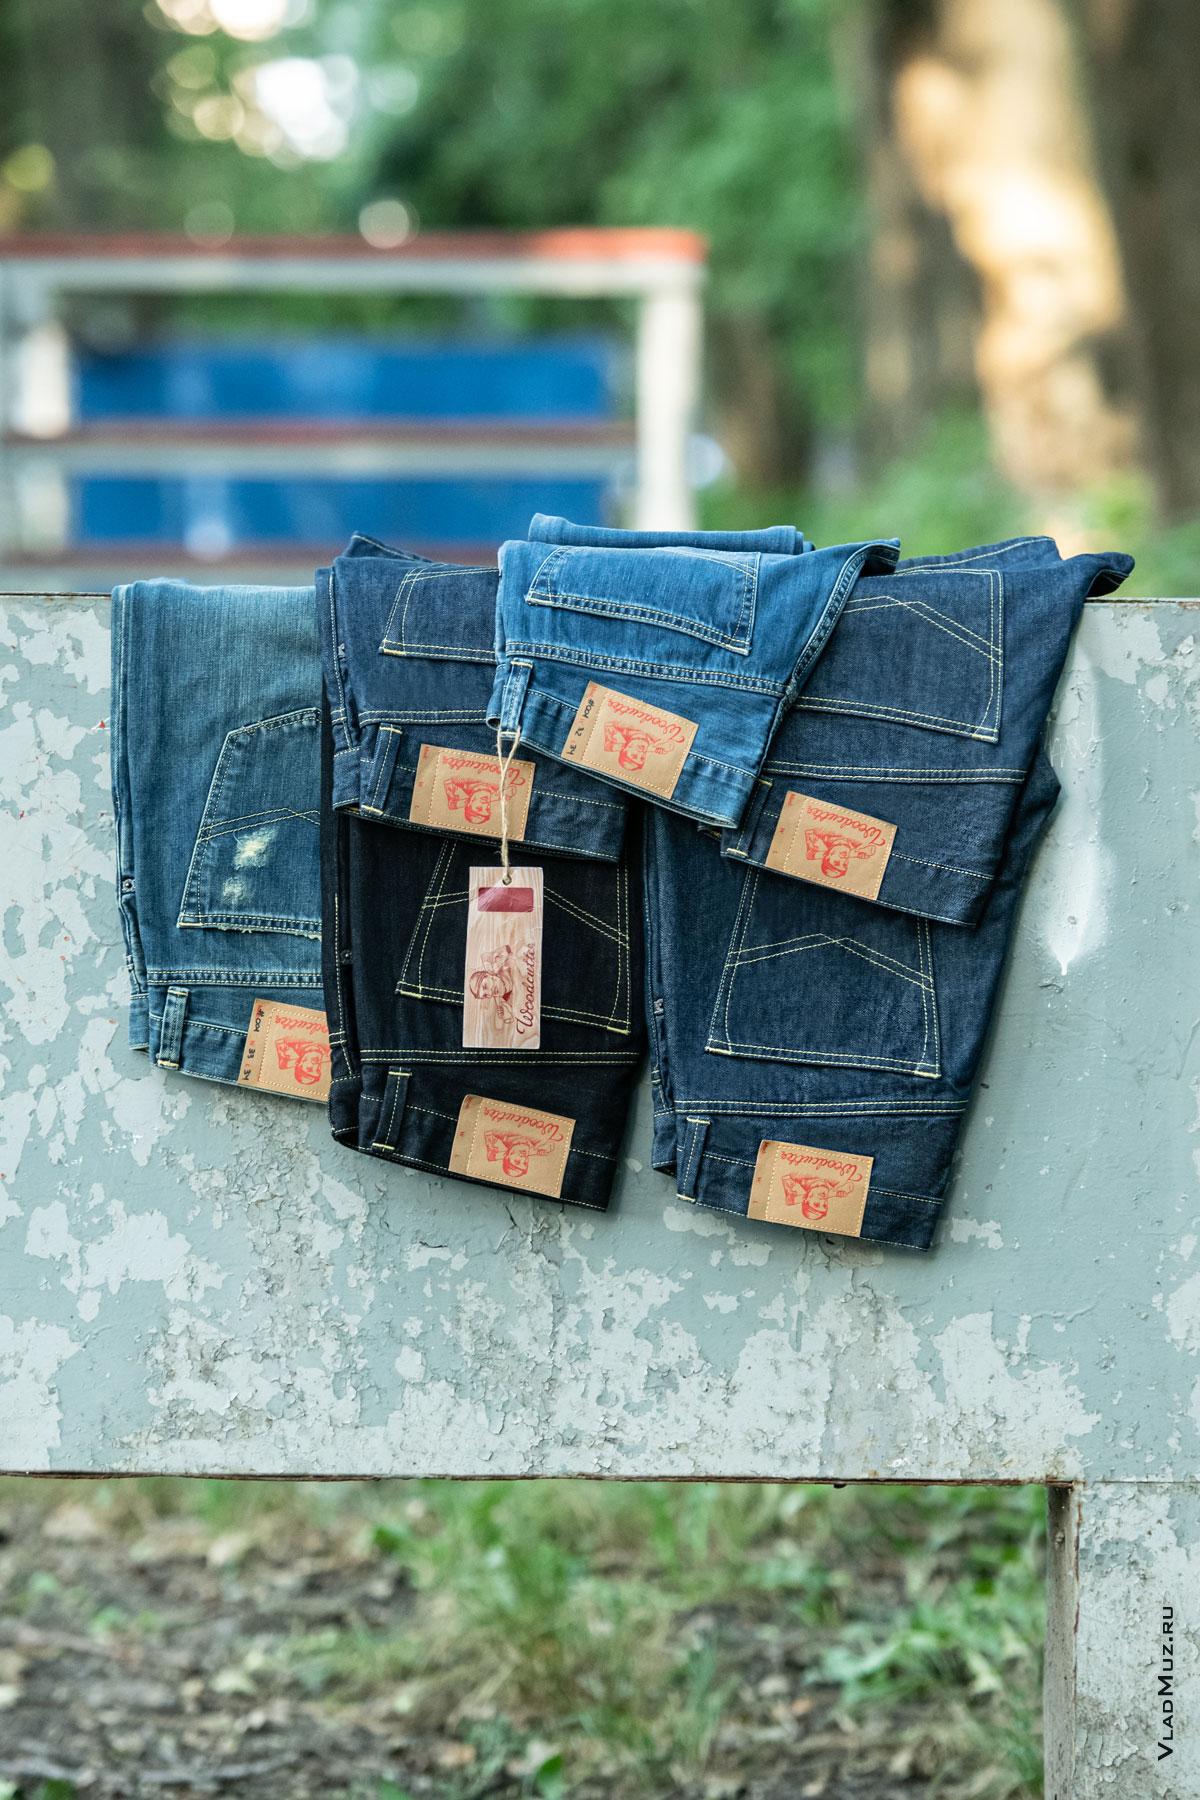 Фото выкладки из 6-ти джинсов на барьере спортивного городка в парке